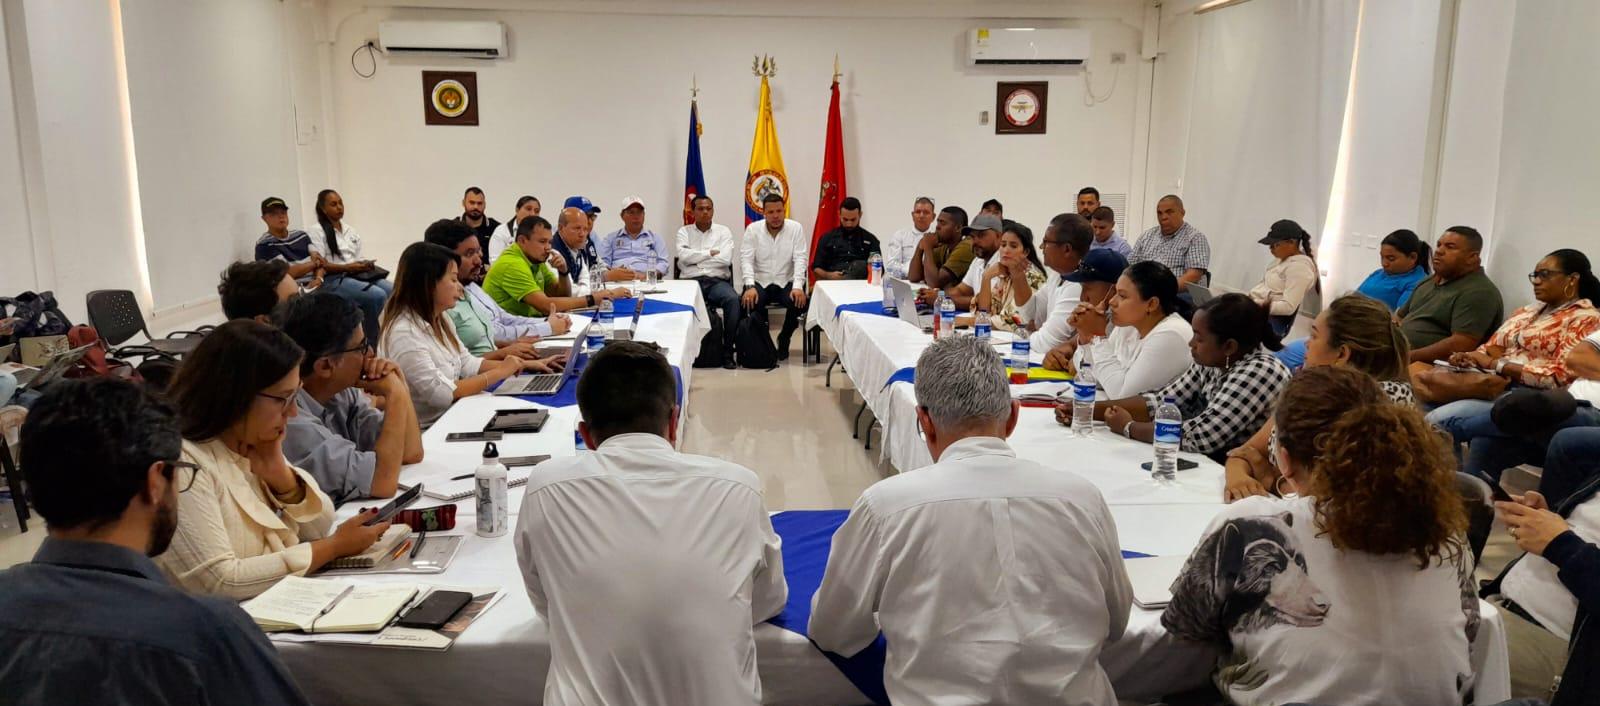 Reunión de los viceministros del Interior, Defensa, Minas y Energía, Medio Ambiente y delegados del Departamento Nacional de Planeación, junto a mineros. 